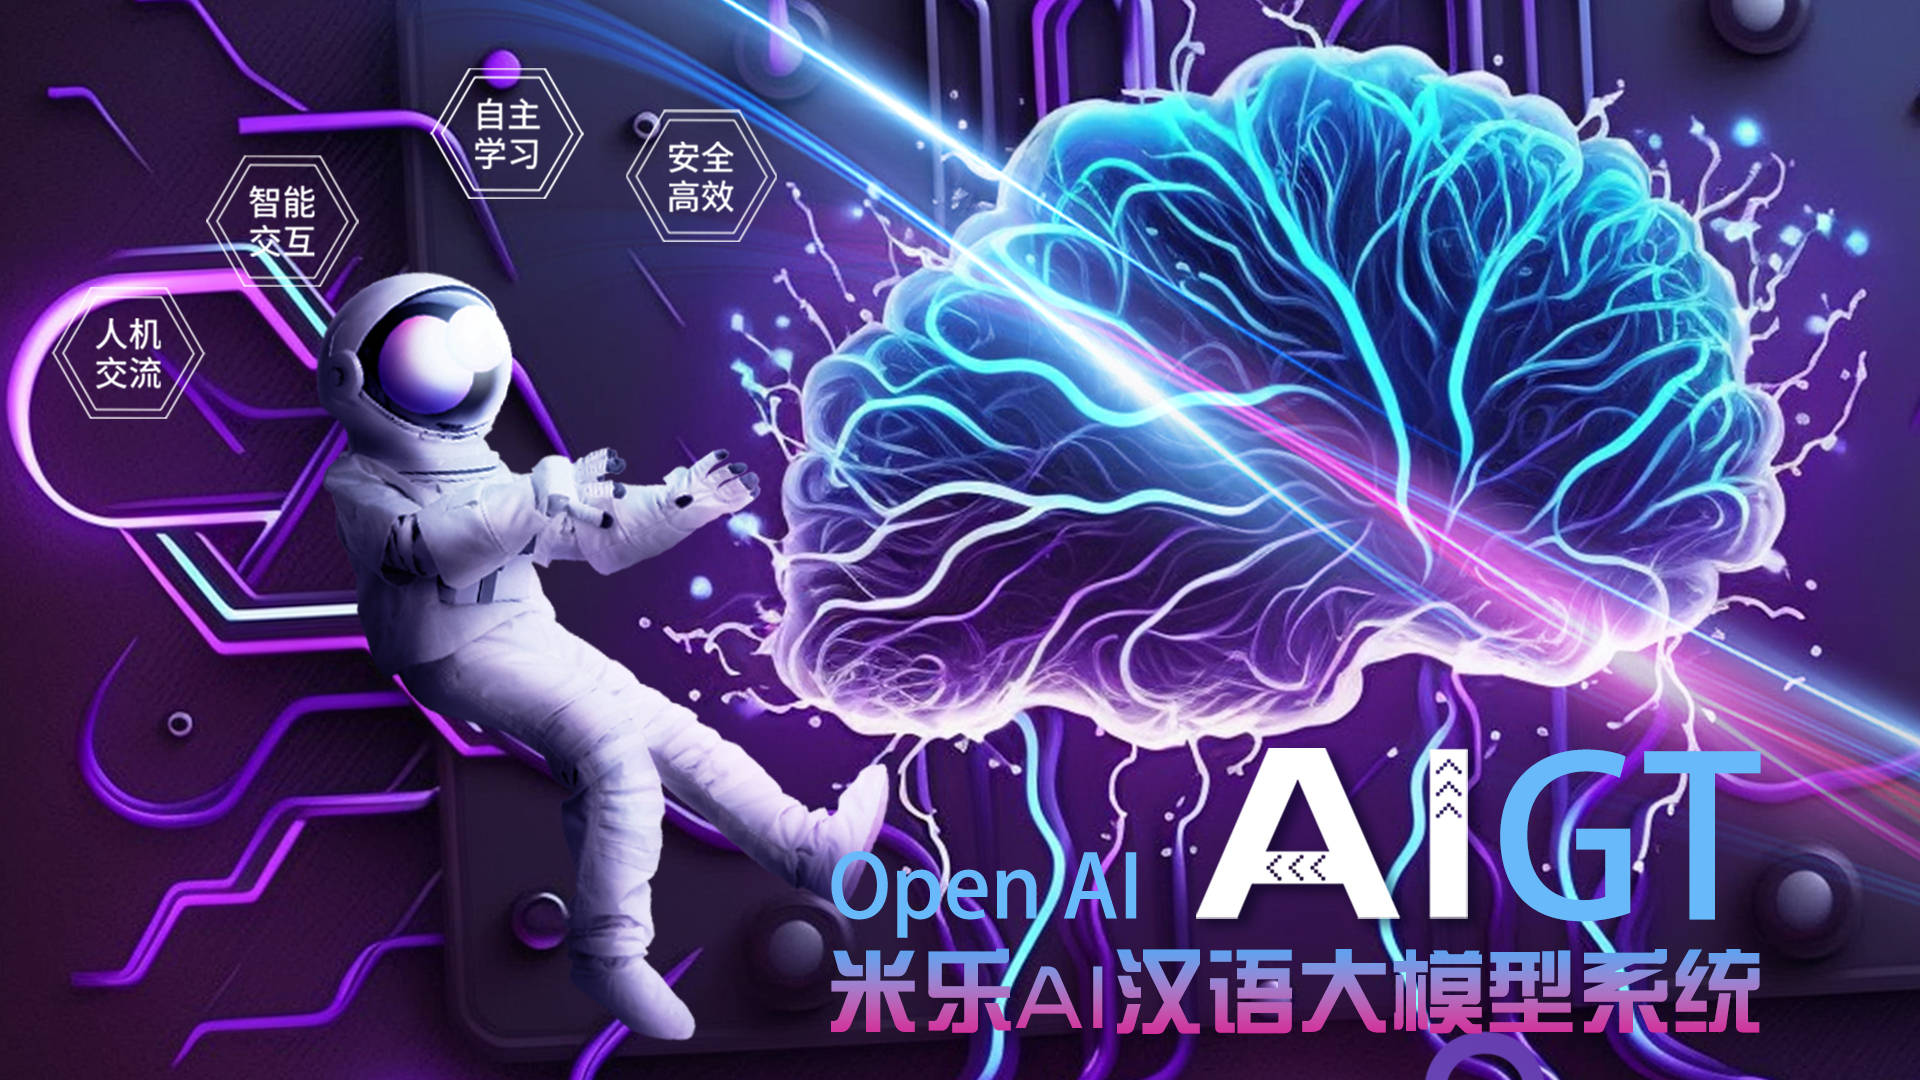 米乐百业——米乐集团与OpenAi公司签约联合开辟AIGT汉语大模子体例